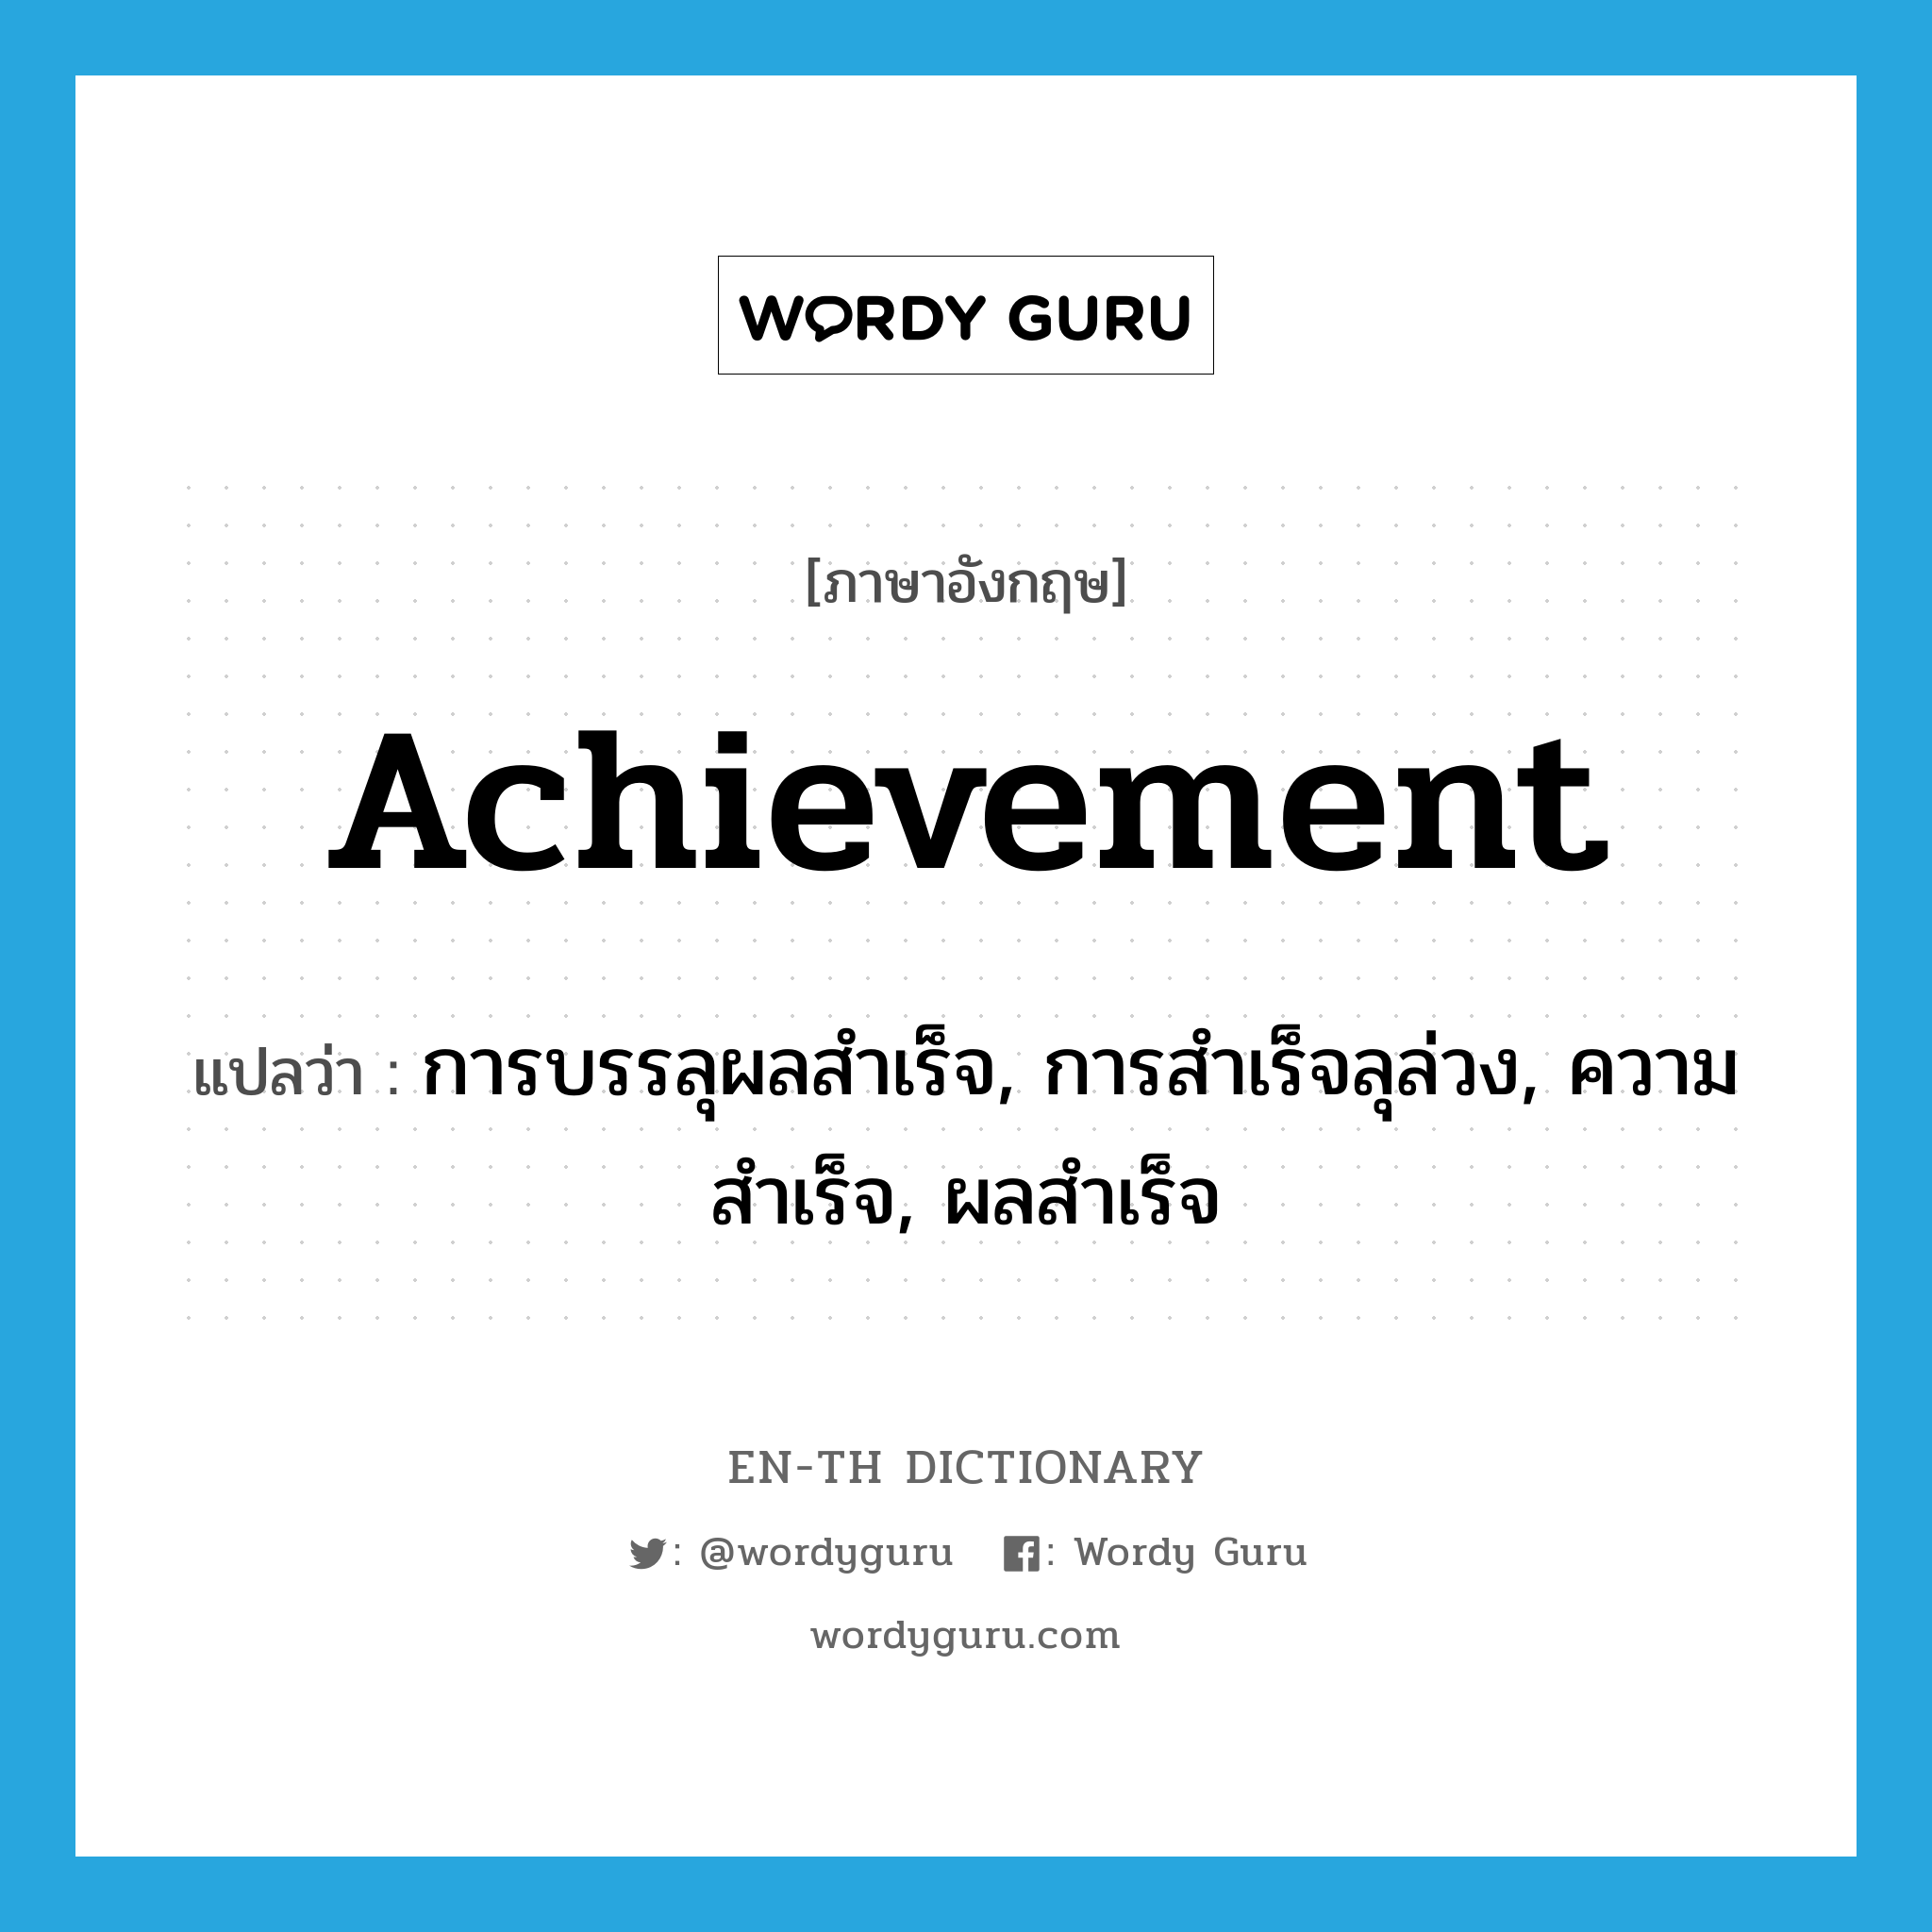 การบรรลุผลสำเร็จ, การสำเร็จลุล่วง, ความสำเร็จ, ผลสำเร็จ ภาษาอังกฤษ?, คำศัพท์ภาษาอังกฤษ การบรรลุผลสำเร็จ, การสำเร็จลุล่วง, ความสำเร็จ, ผลสำเร็จ แปลว่า achievement ประเภท N หมวด N